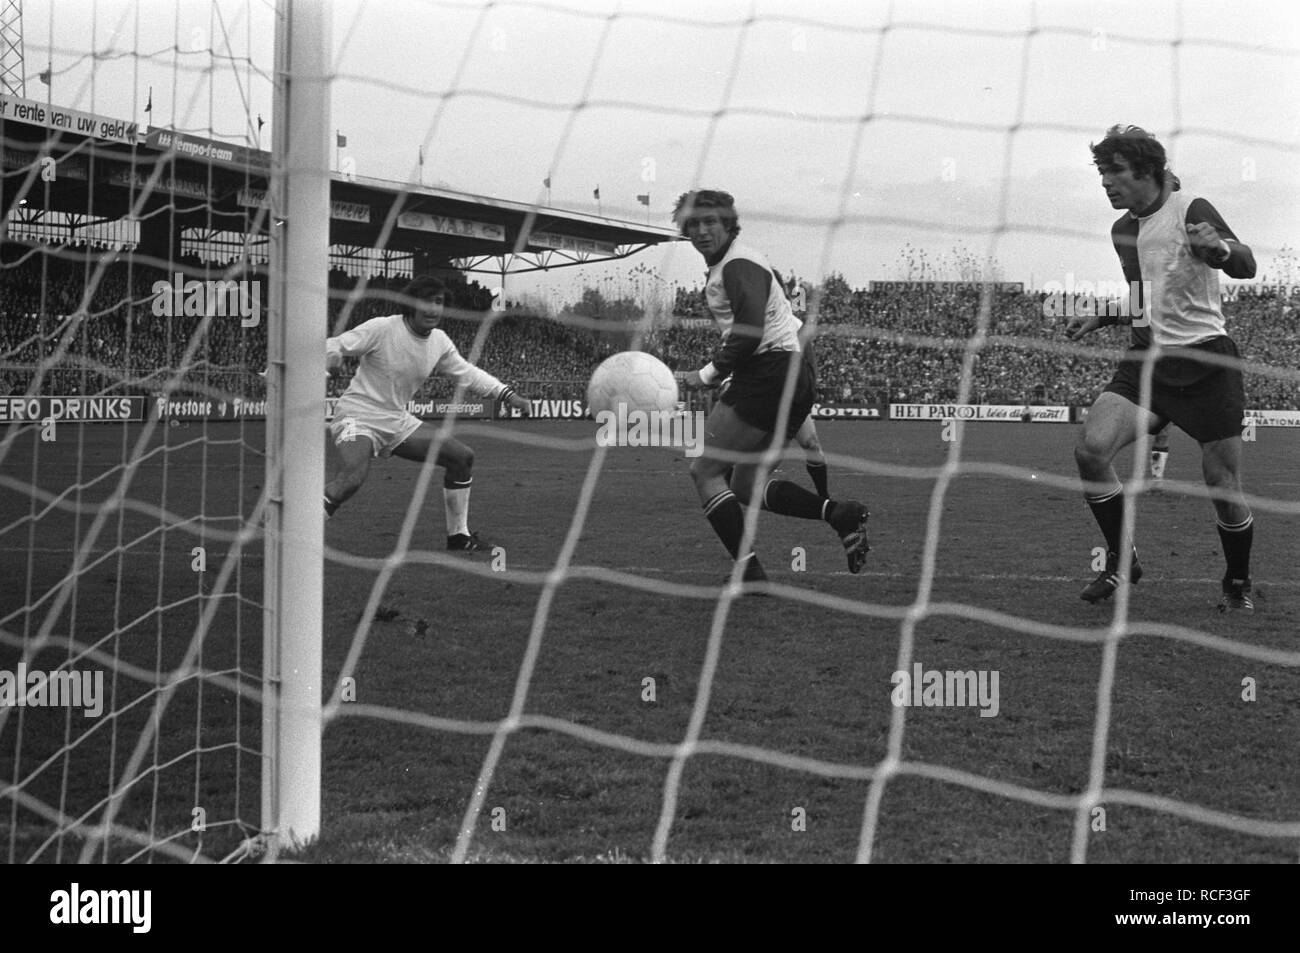 Ajax tegen Feyenoord 2-1, Swart (l) scoort met kopbal, (r Van Hanegem, Bestanddeelnr 925-1128. Stock Photo